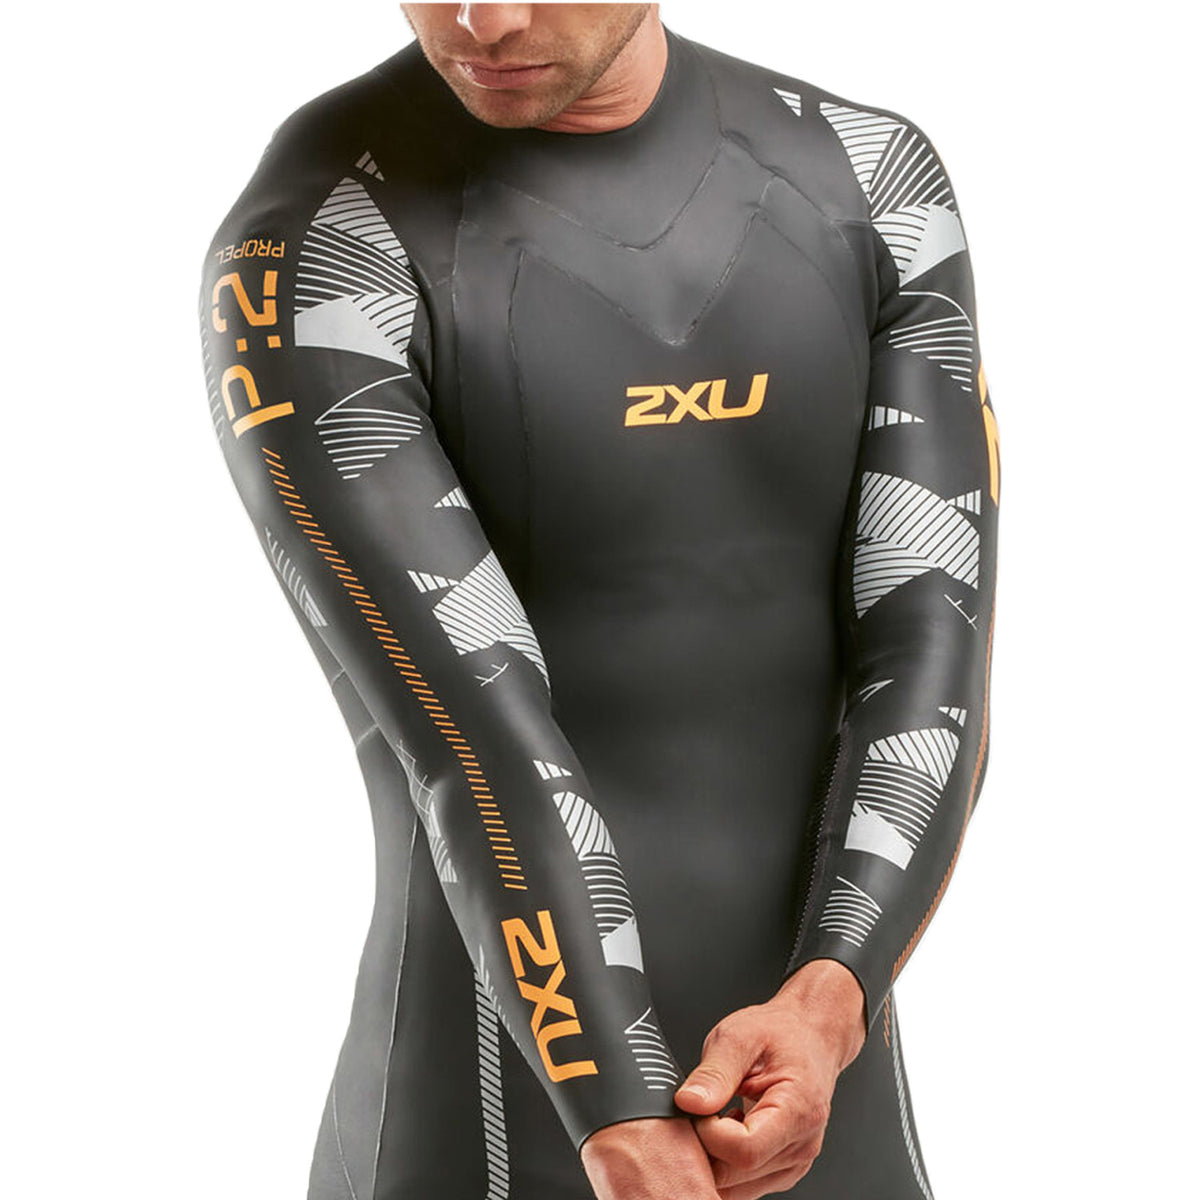 1) □ 公式 □ 2XU/ツータイムズユー トライアスロン用ウェットスーツ P:2プロペル P:2 Propel Triathlon Wetsuit - Black/Orange Fizz [メンズ] MW4990c BLK/ORG STYLE BIKE ONLINE SHOP